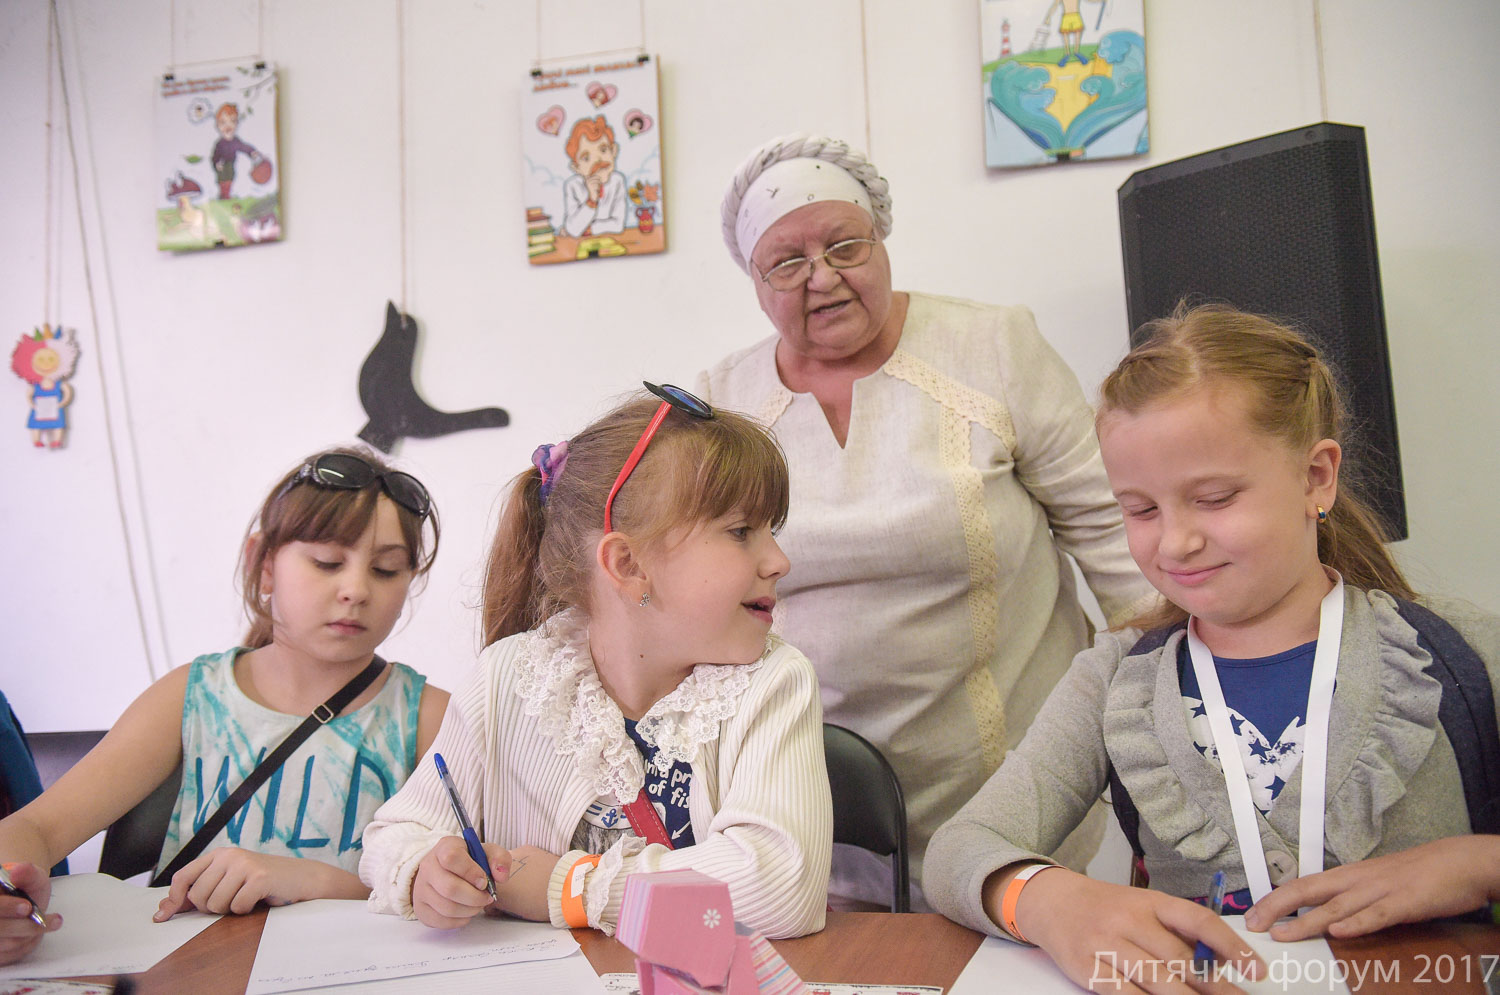 Інтерв´ю дня. Оксана Думанська: «Форум - один із найважливіших патріотичних заходів, який зміцнює зв’язки між різними українськими регіонами через дітей, що згодом стануть повнолітніми й повноправними громадянами»